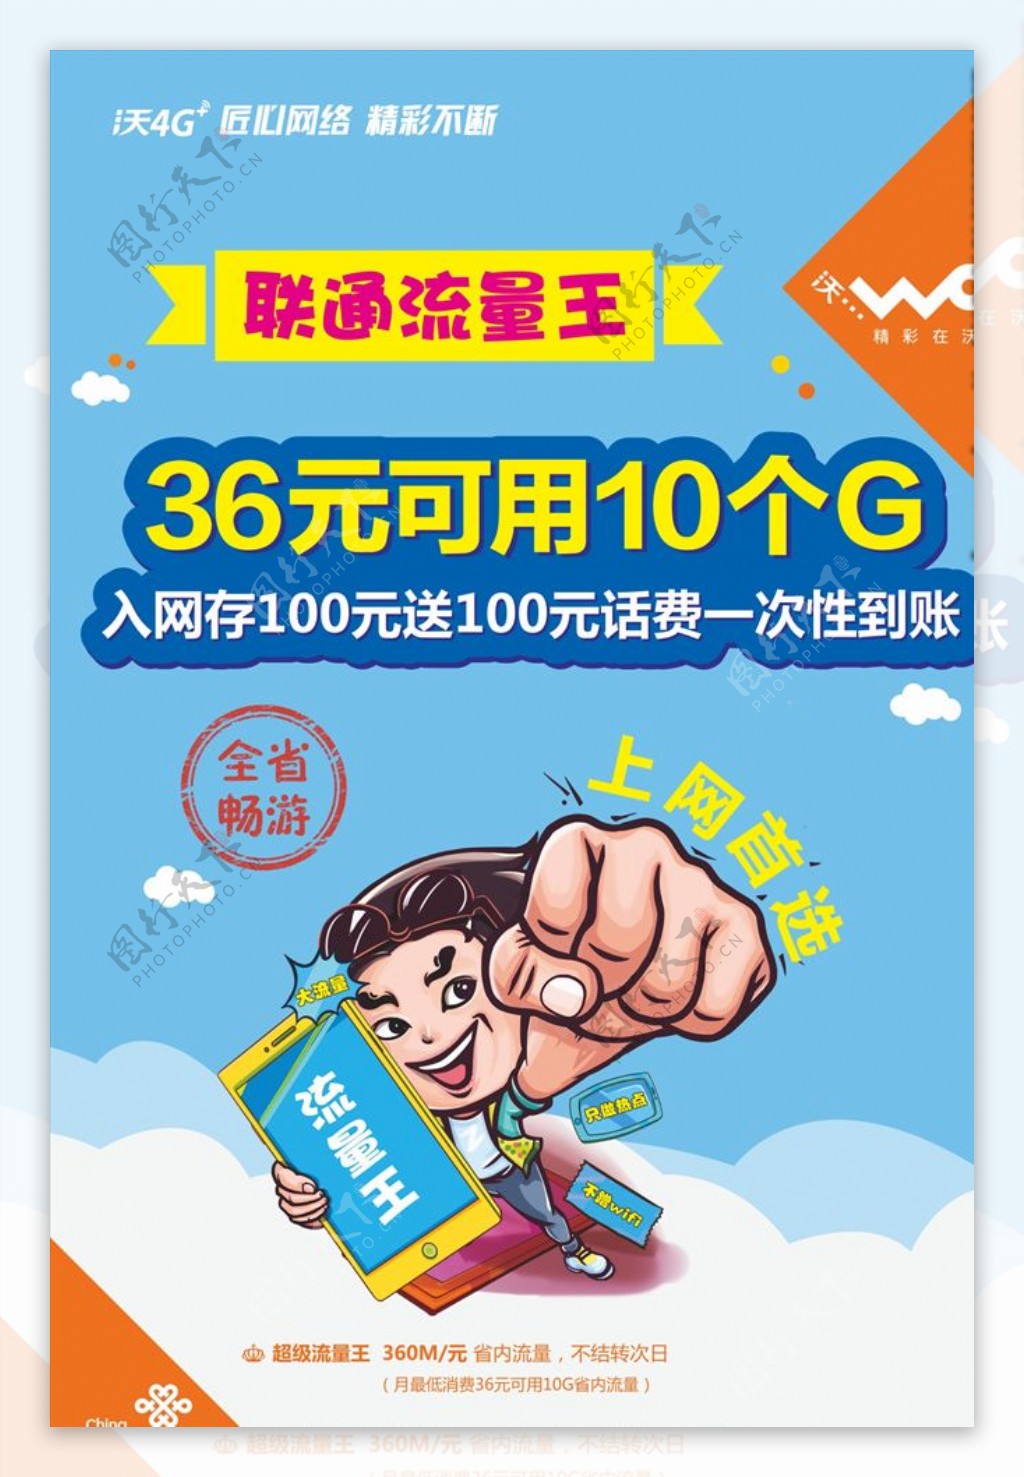 中国联通流量王36元10G